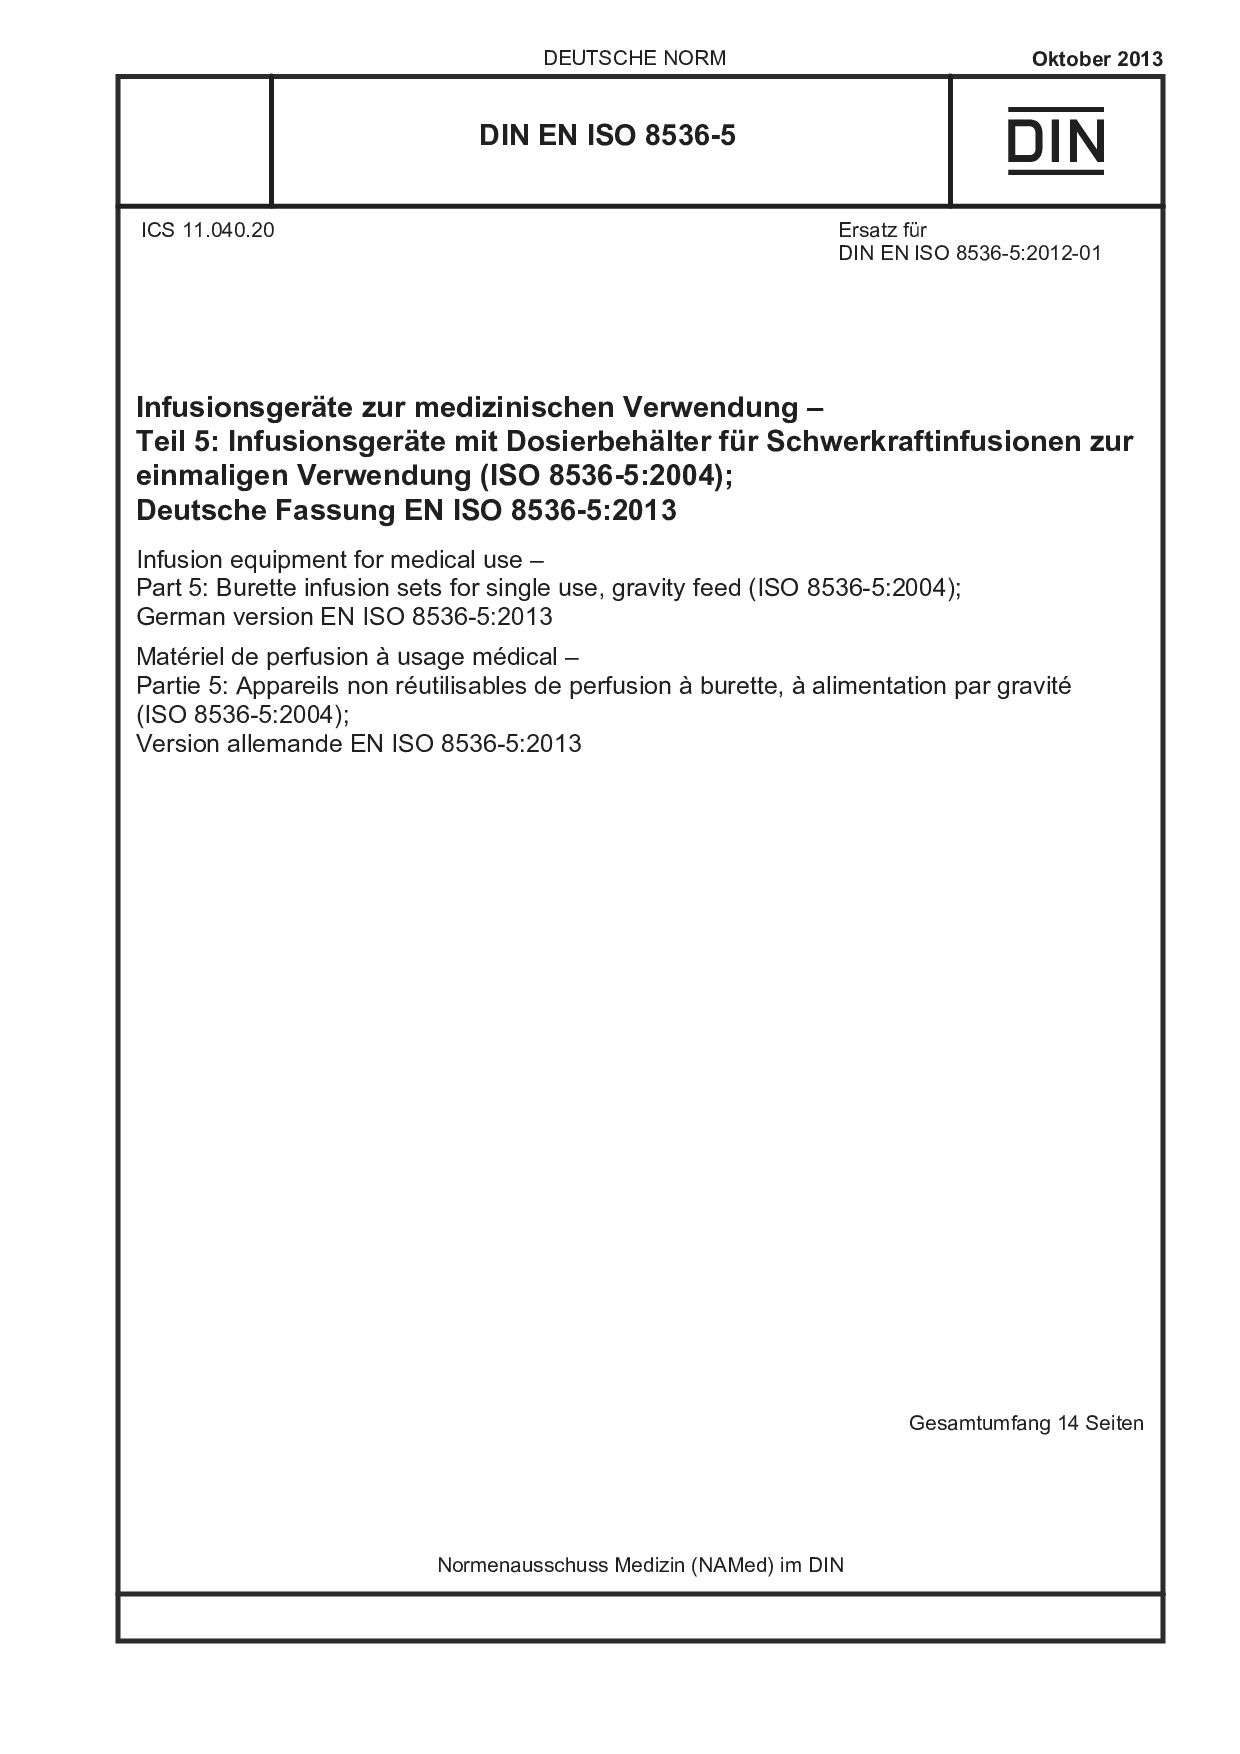 DIN EN ISO 8536-5:2013封面图